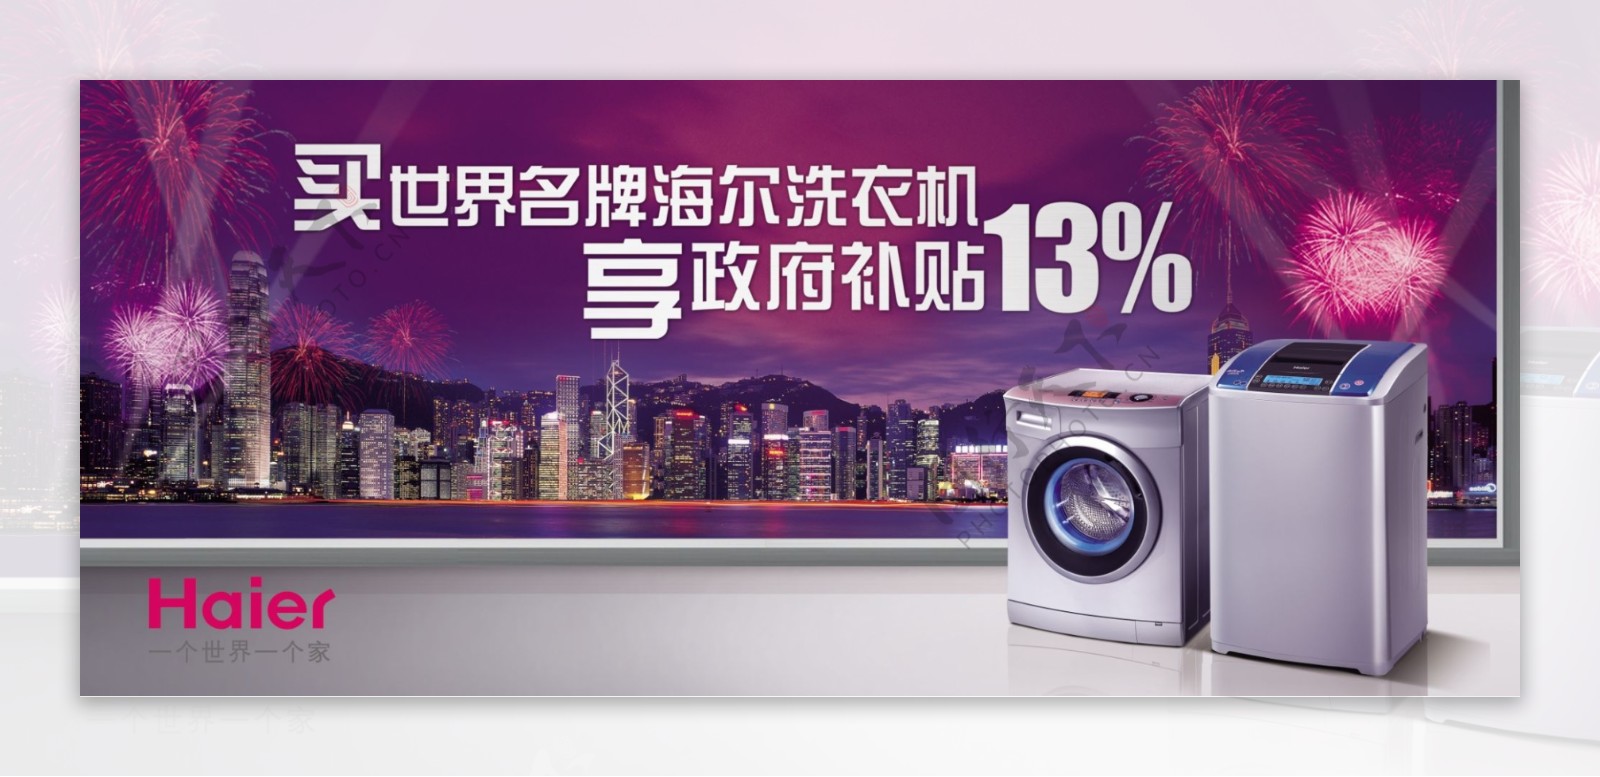 世界品牌海尔洗衣机海报广告图片